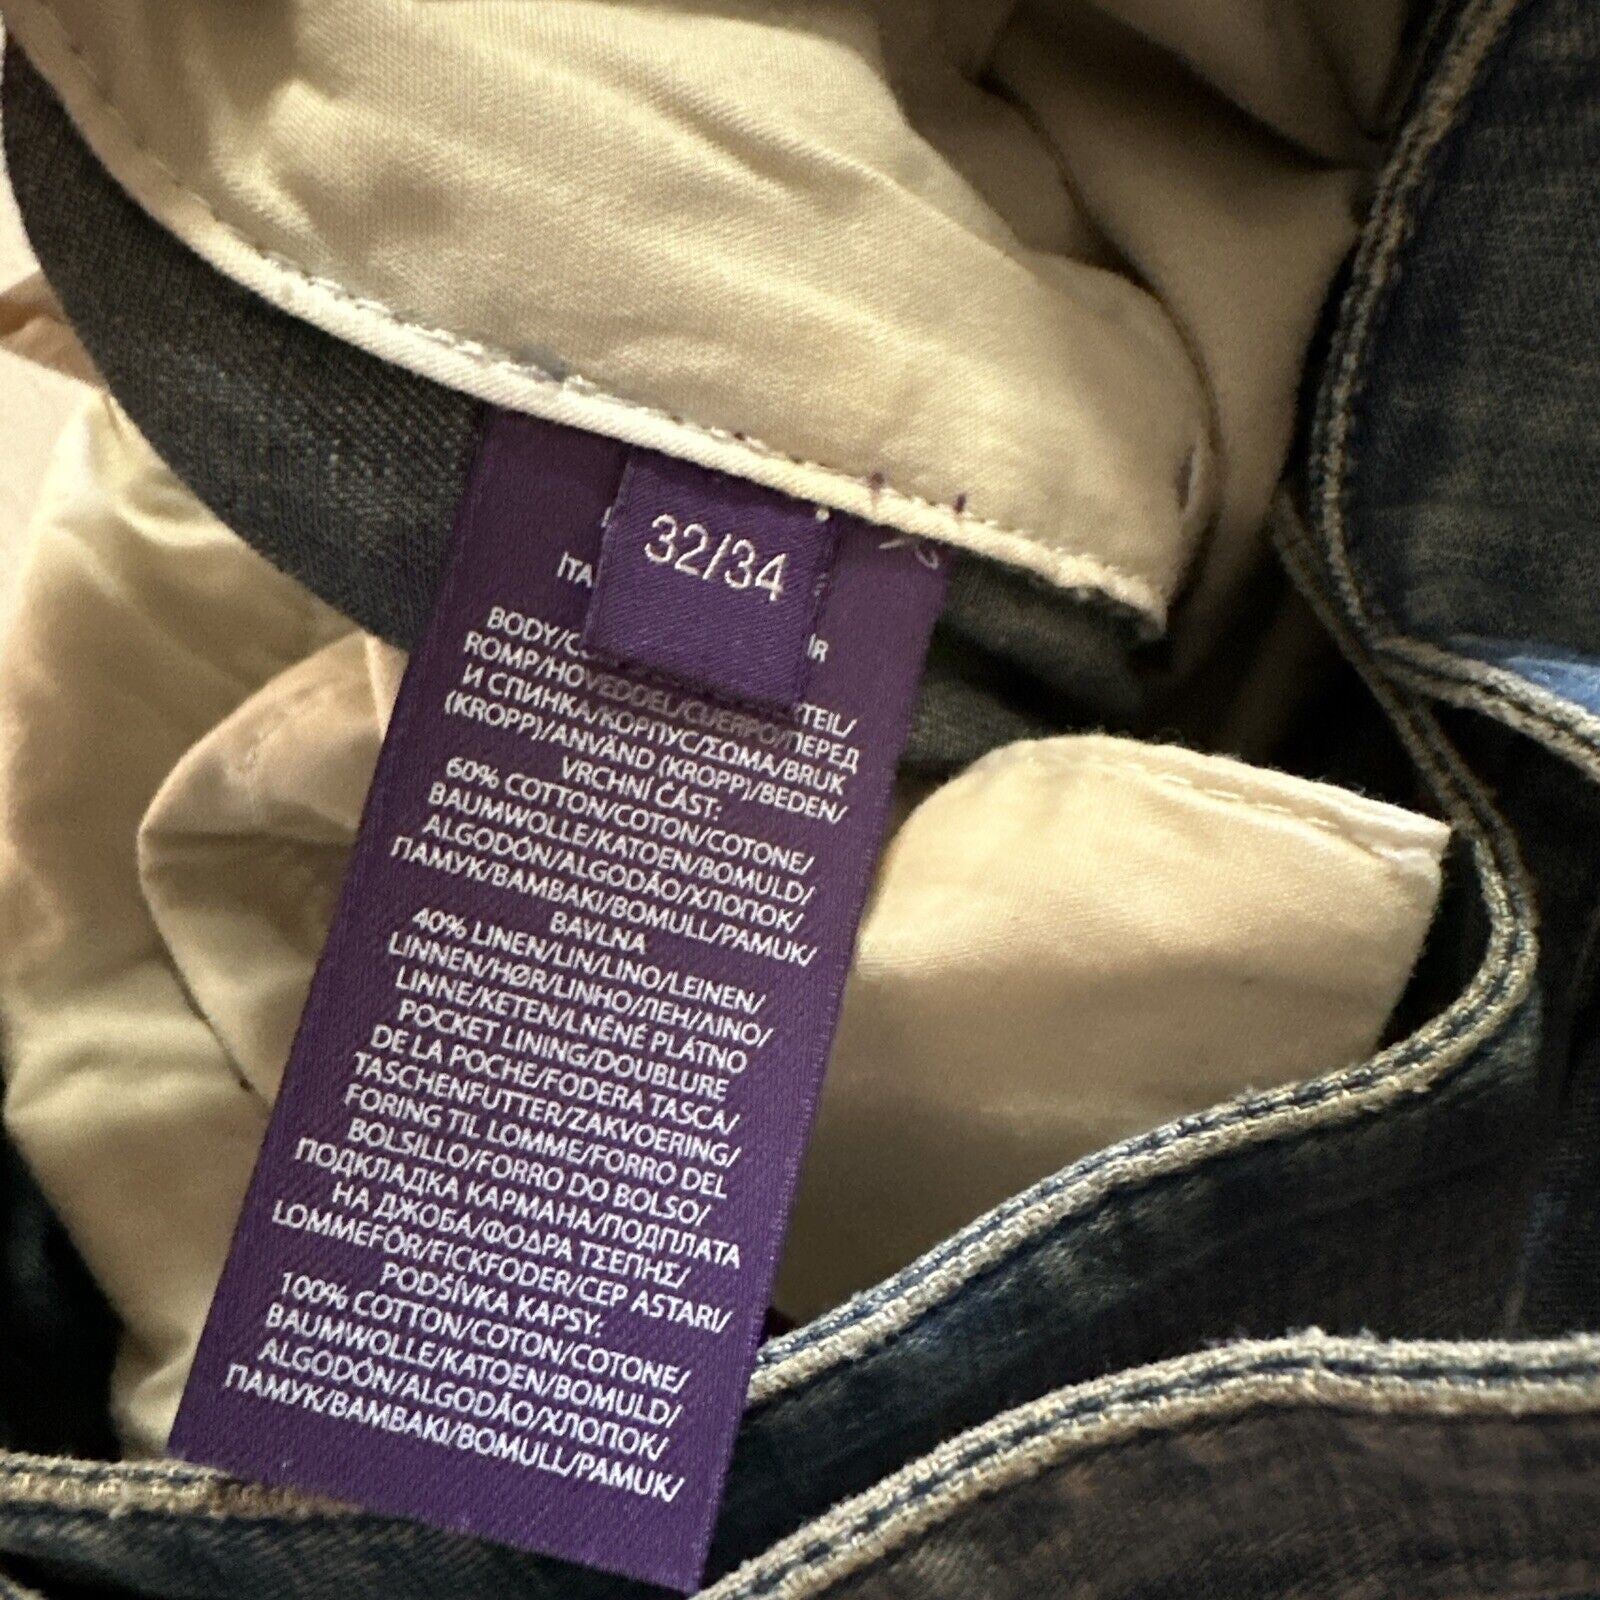 NWT Ralph Lauren Purple Label Men Jeans Pants Blue 34x32 US ( 48 Eu ) Italy